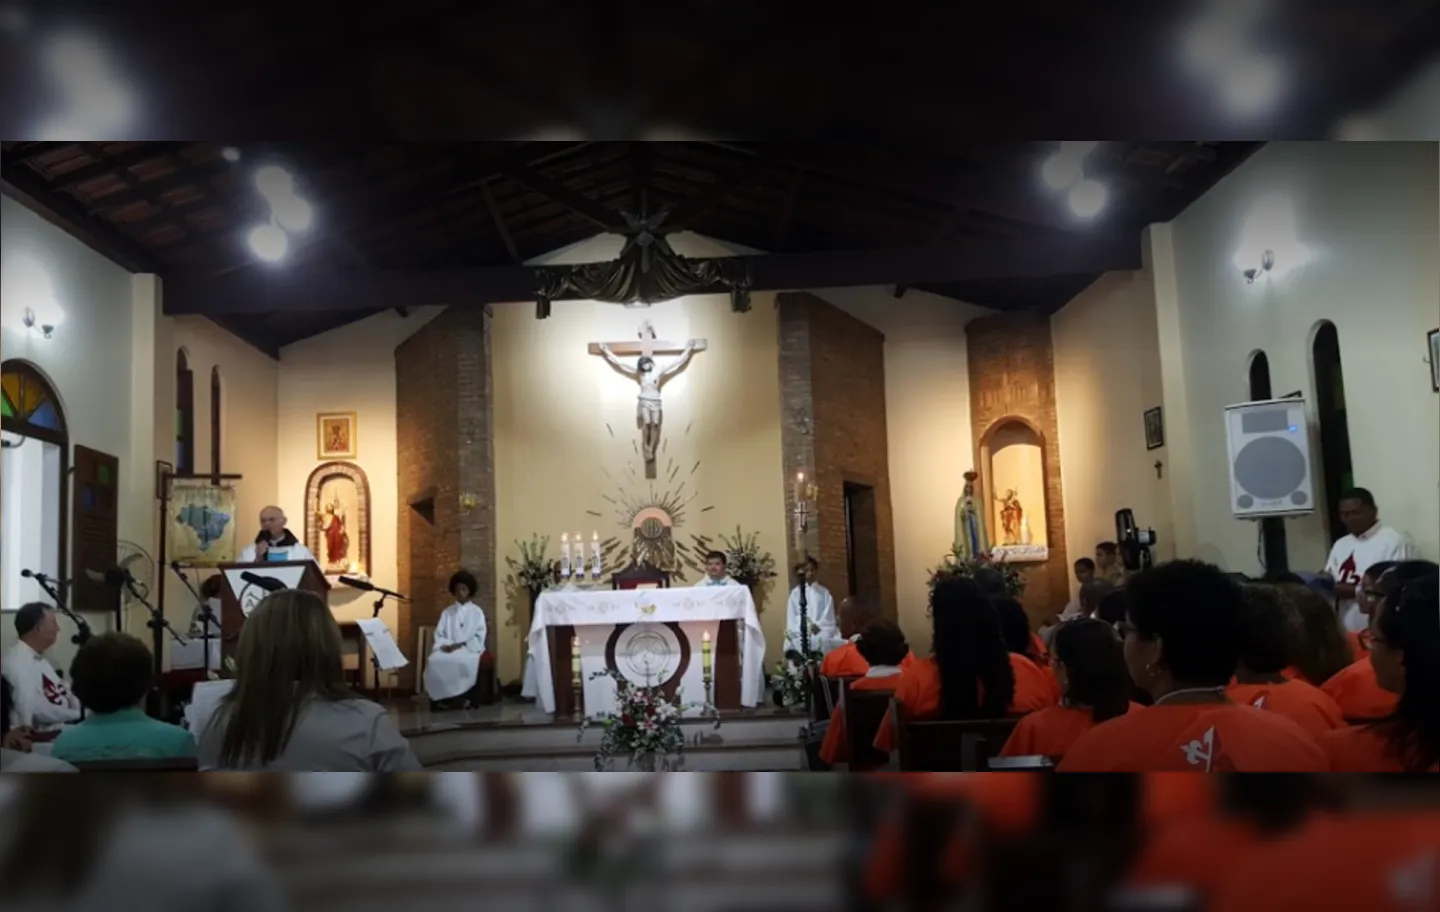 Devotos de São João Batista participando do rito tradicional de missas na igreja | Foto: Divulgação